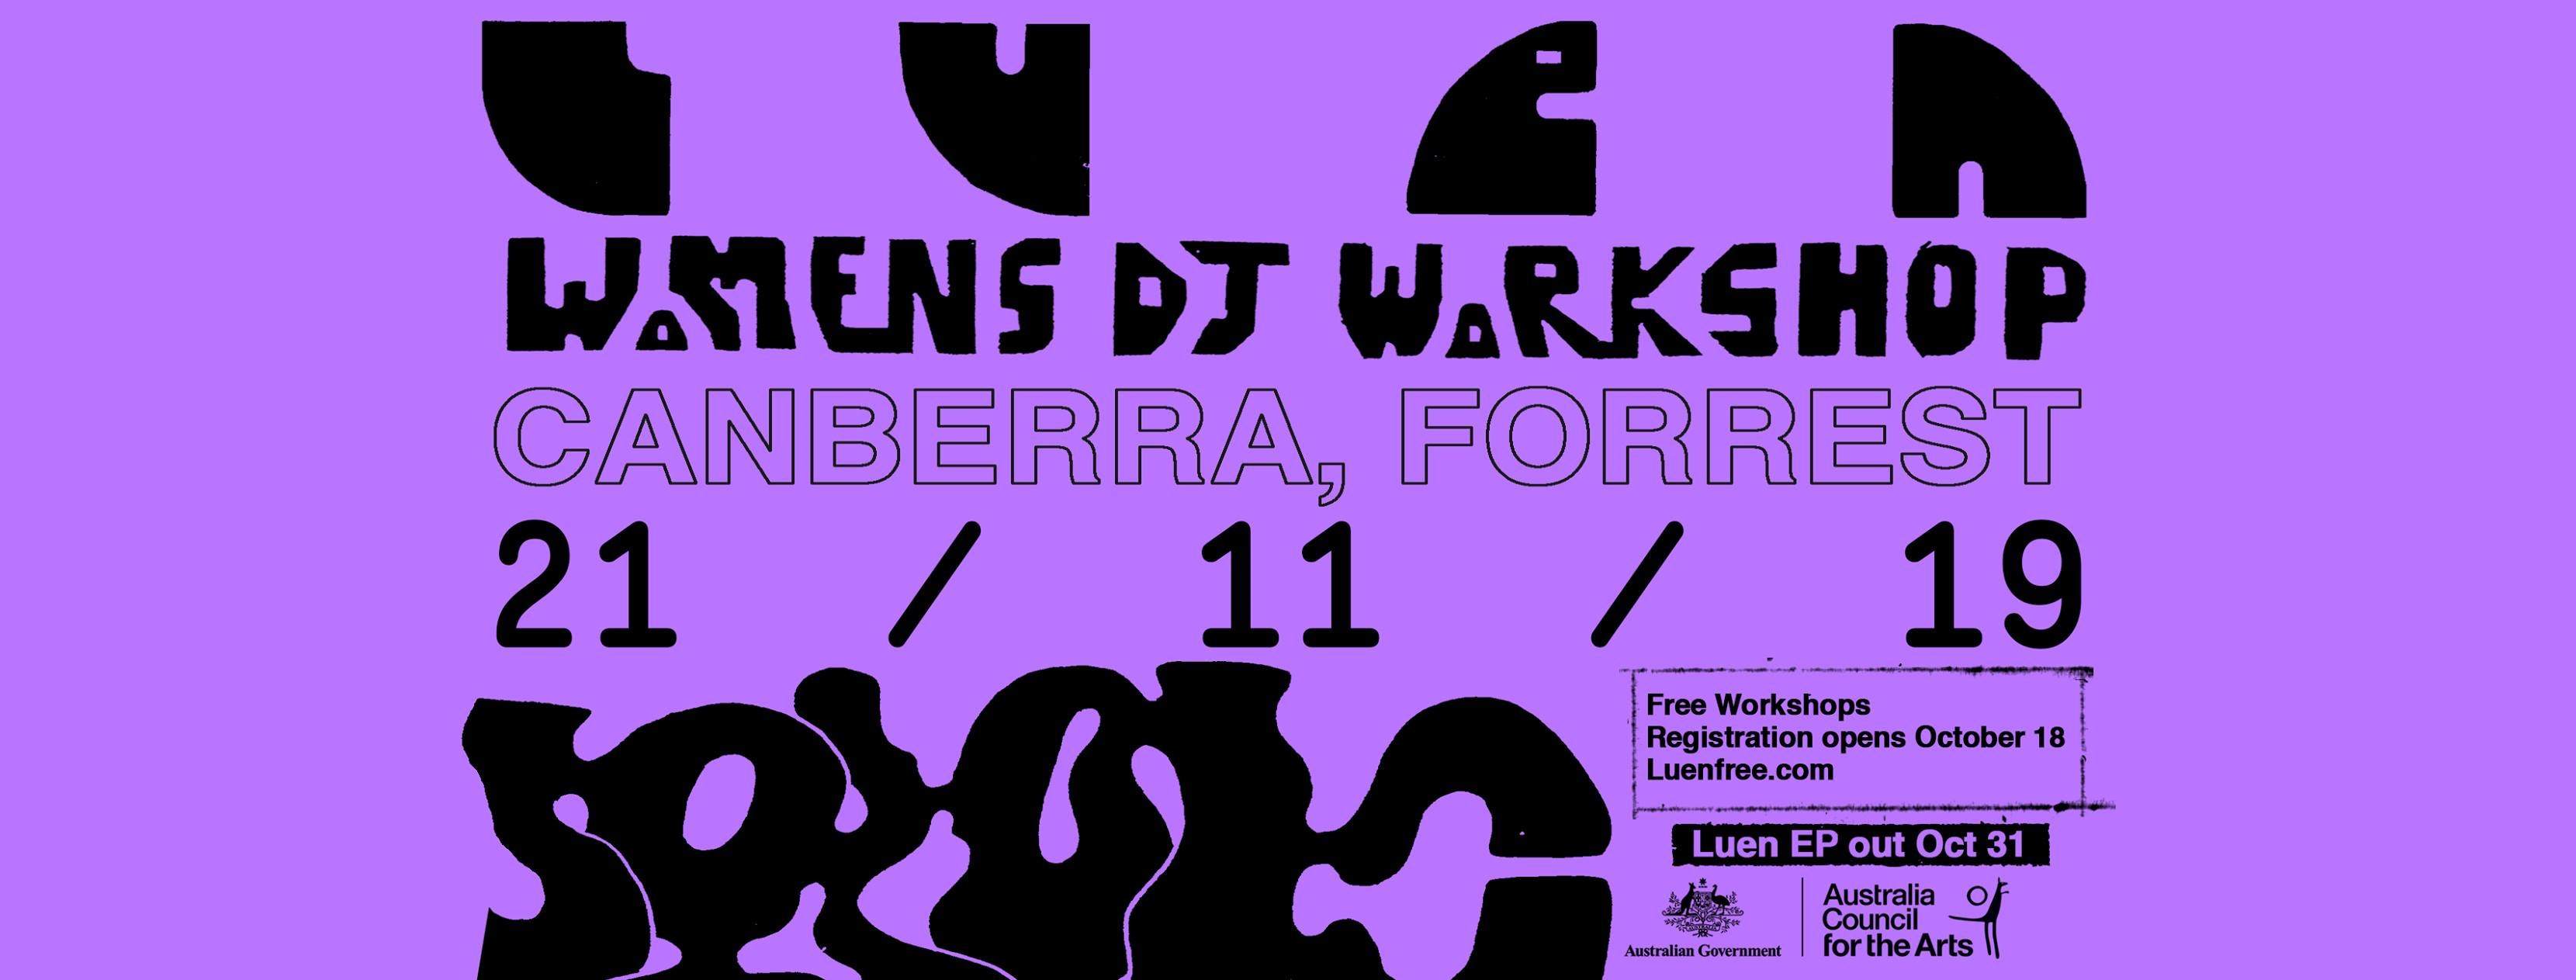 Women's DJ Workshops Canberra - Página frontal